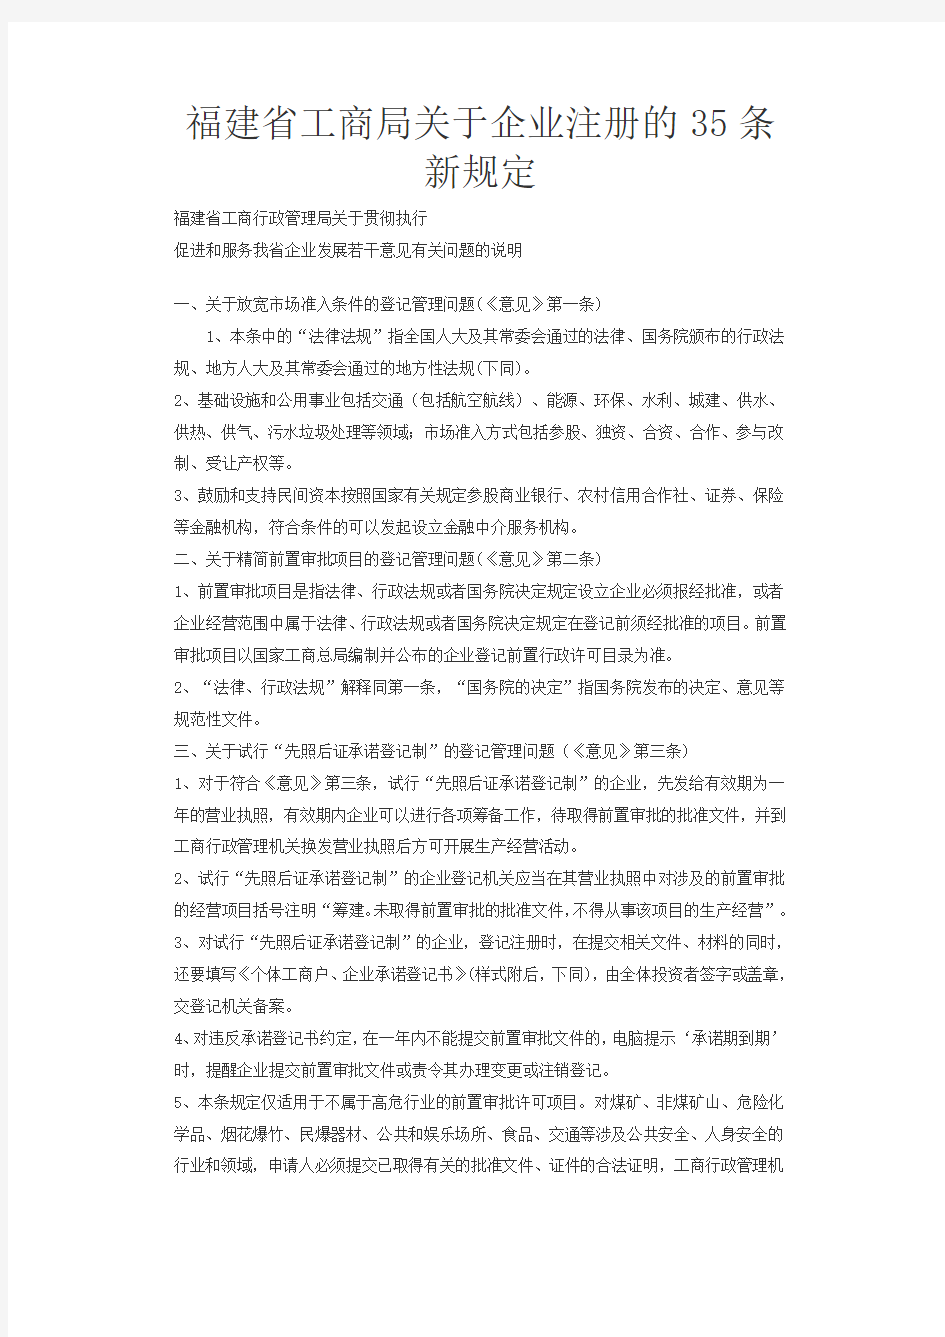 福建省工商局关于企业注册的35条新规定